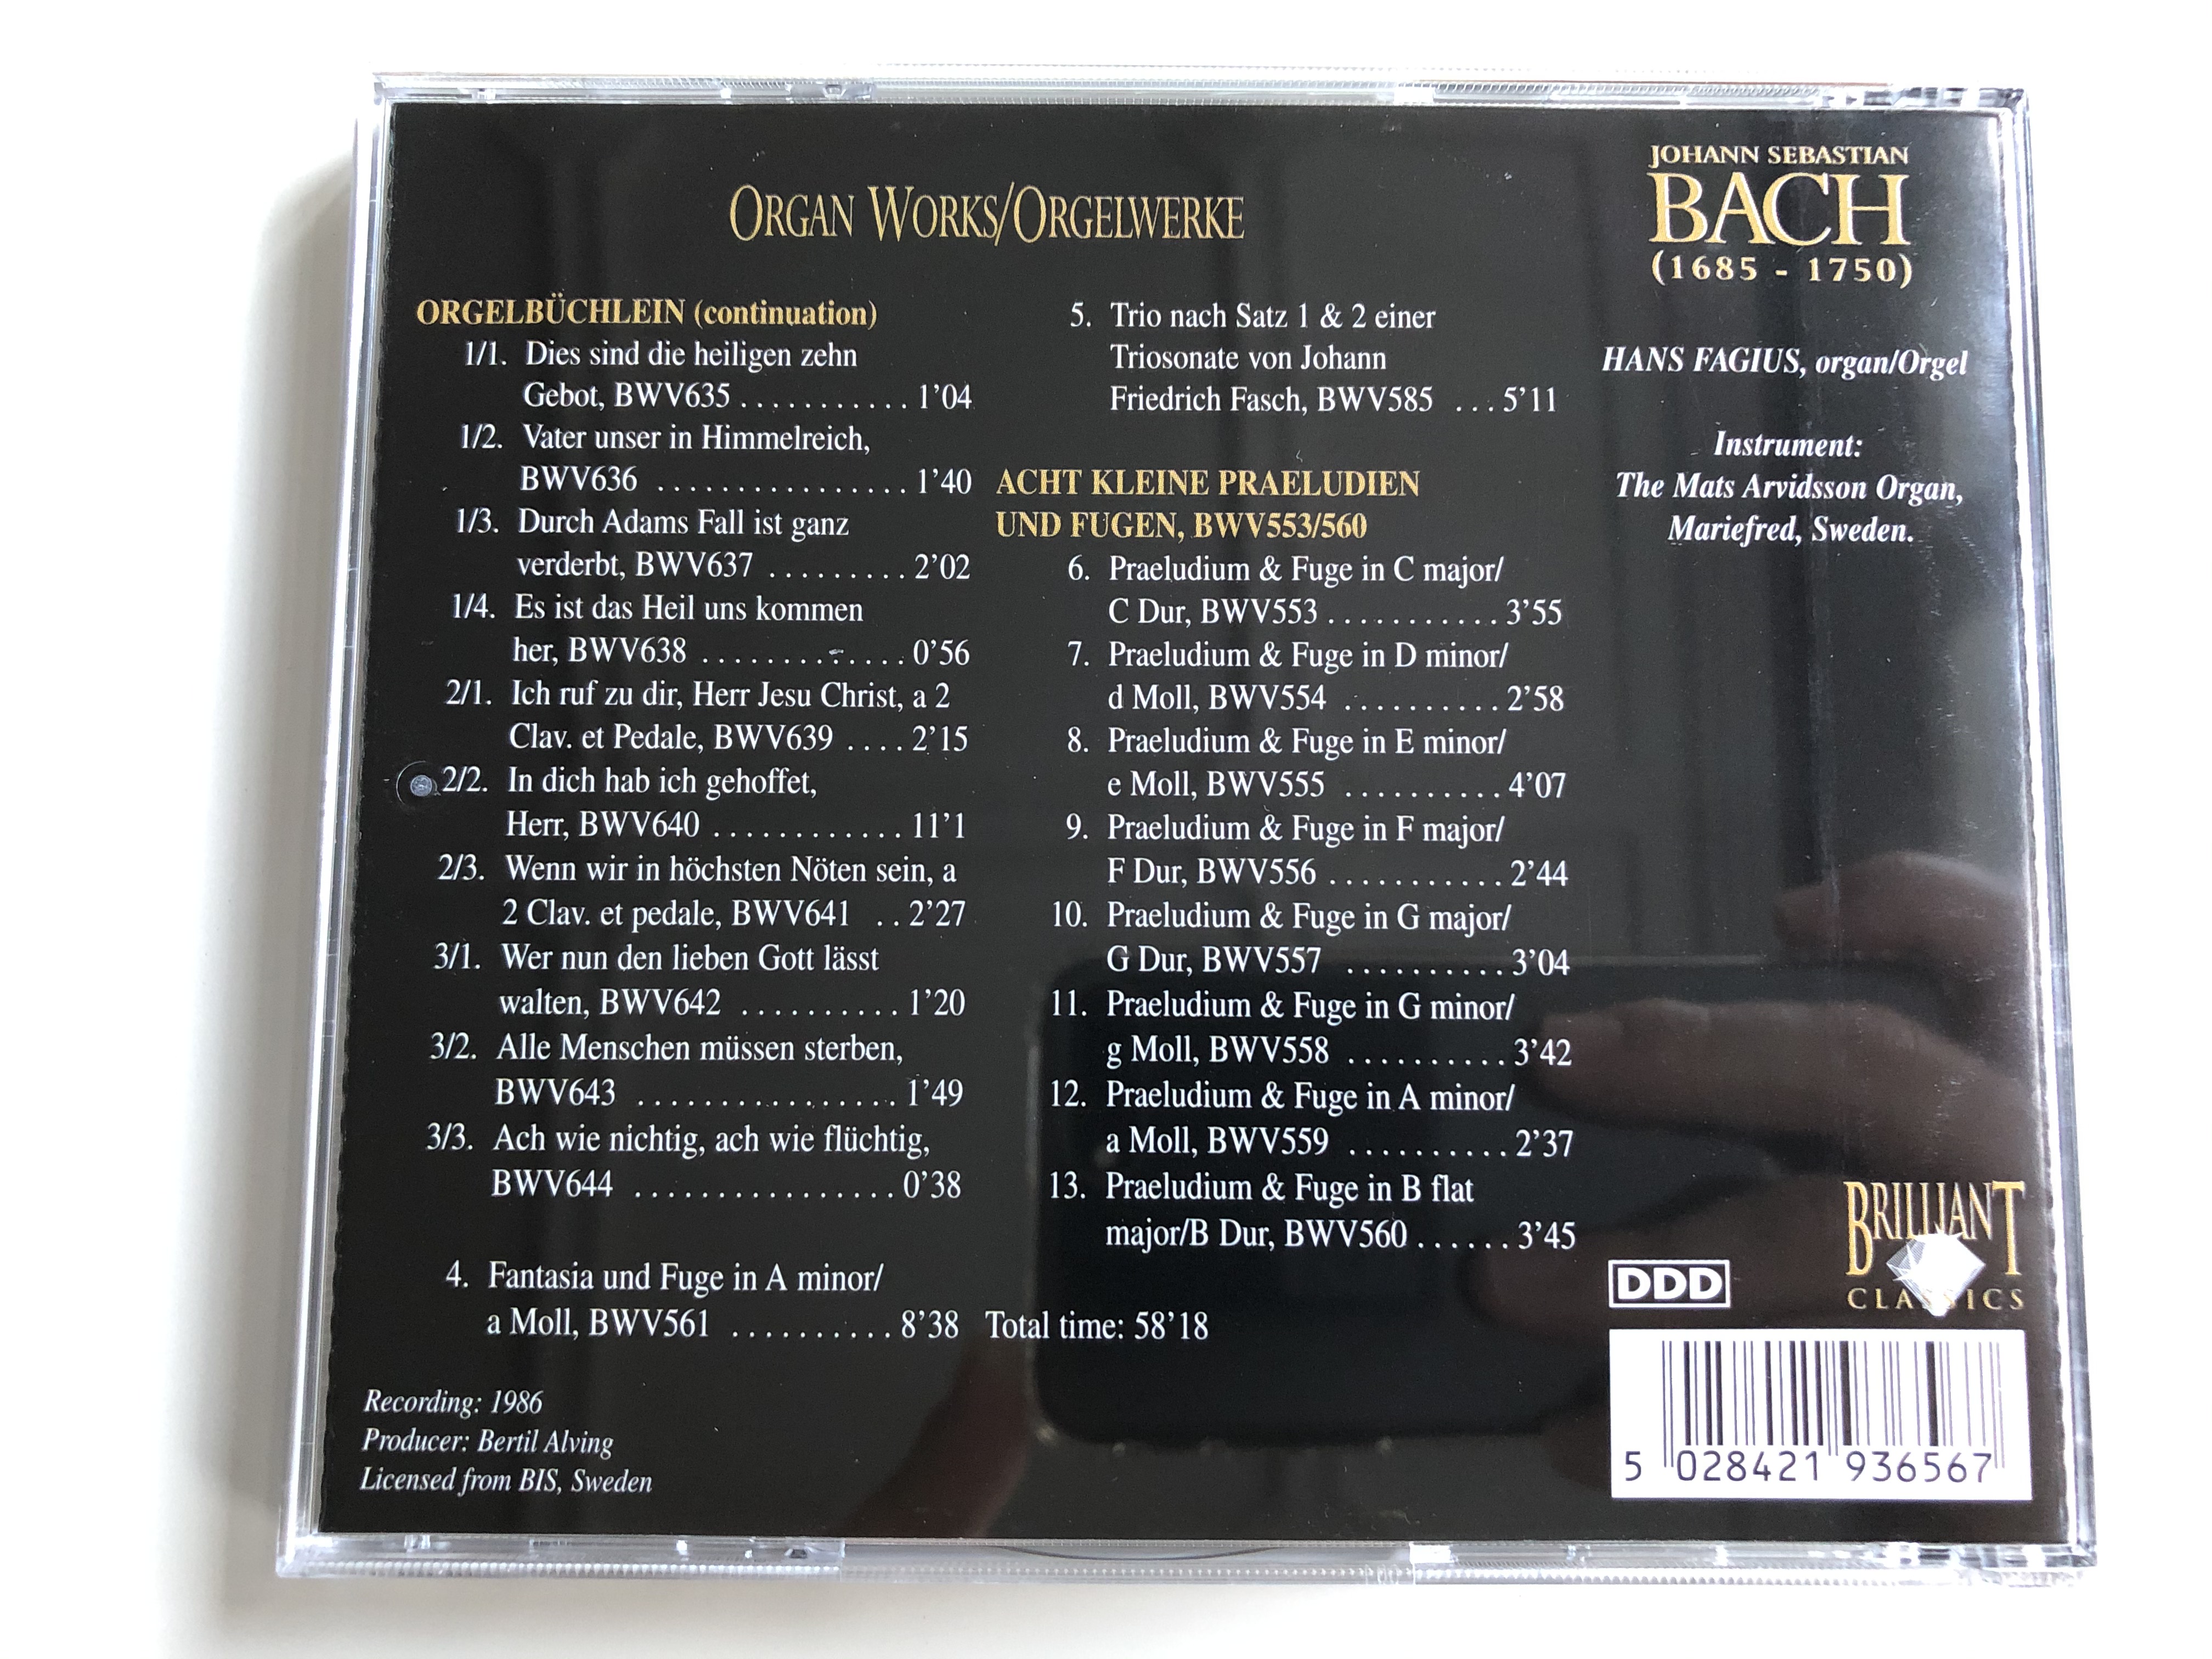 bach-edition-organ-works-orgelwerke-orgelbuchlein-8-kleine-praeludien-fugen-bwv553560-brilliant-classics-audio-cd-993656-3-.jpg